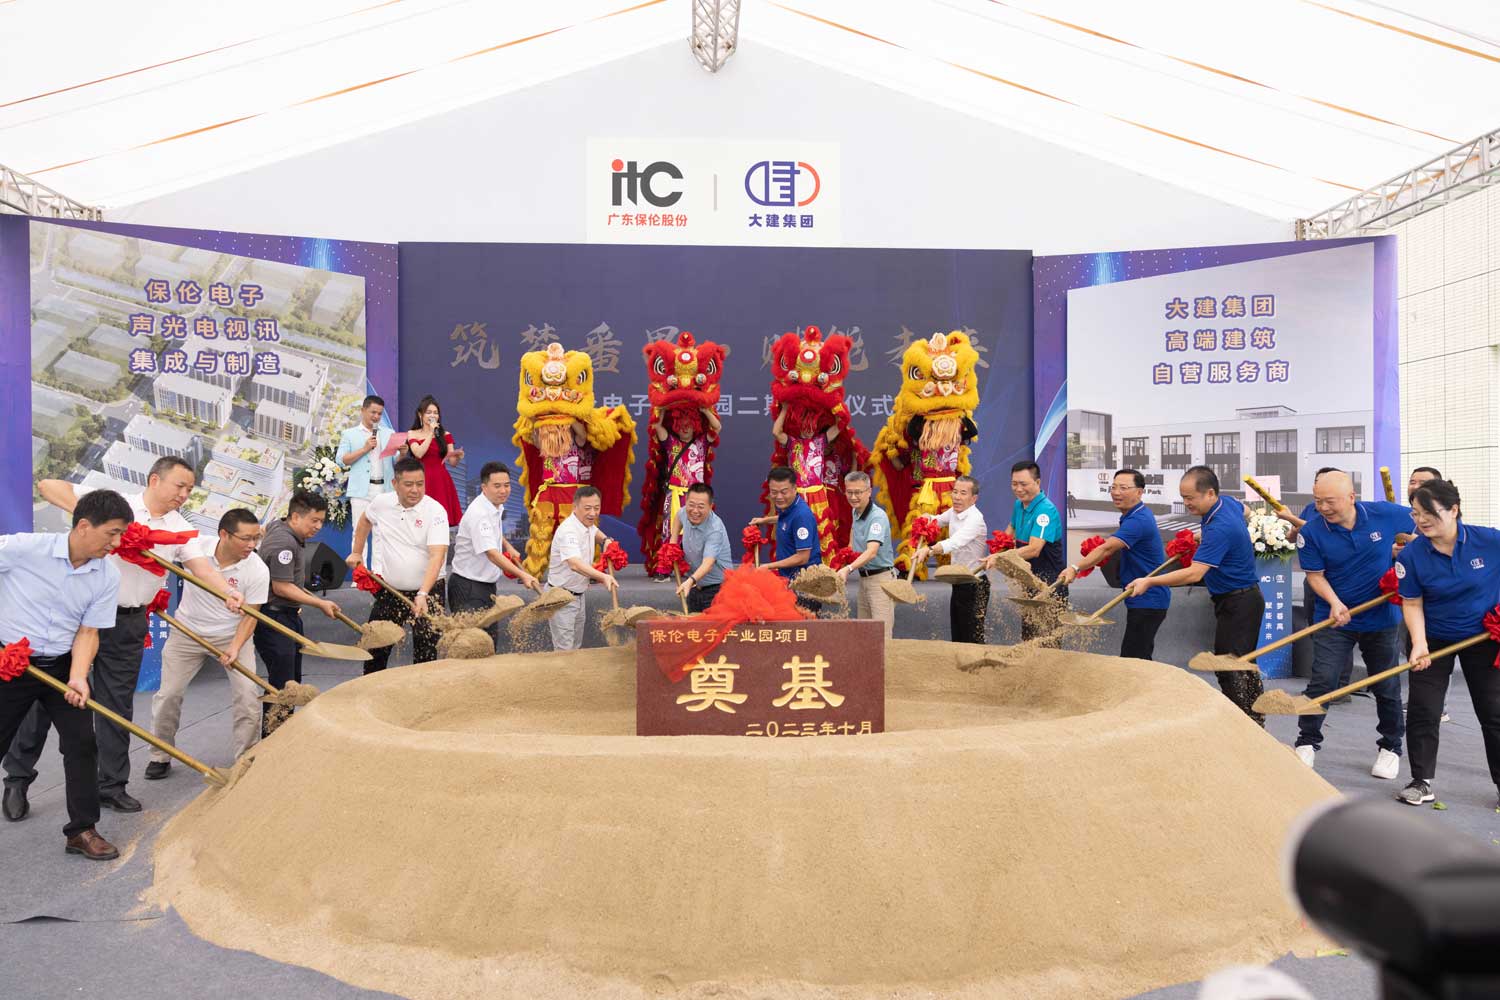 Boas notícias! Parabéns pela cerimônia de inauguração bem-sucedida da Fase 2 do Parque Industrial Eletrônico itc Bao Lun!